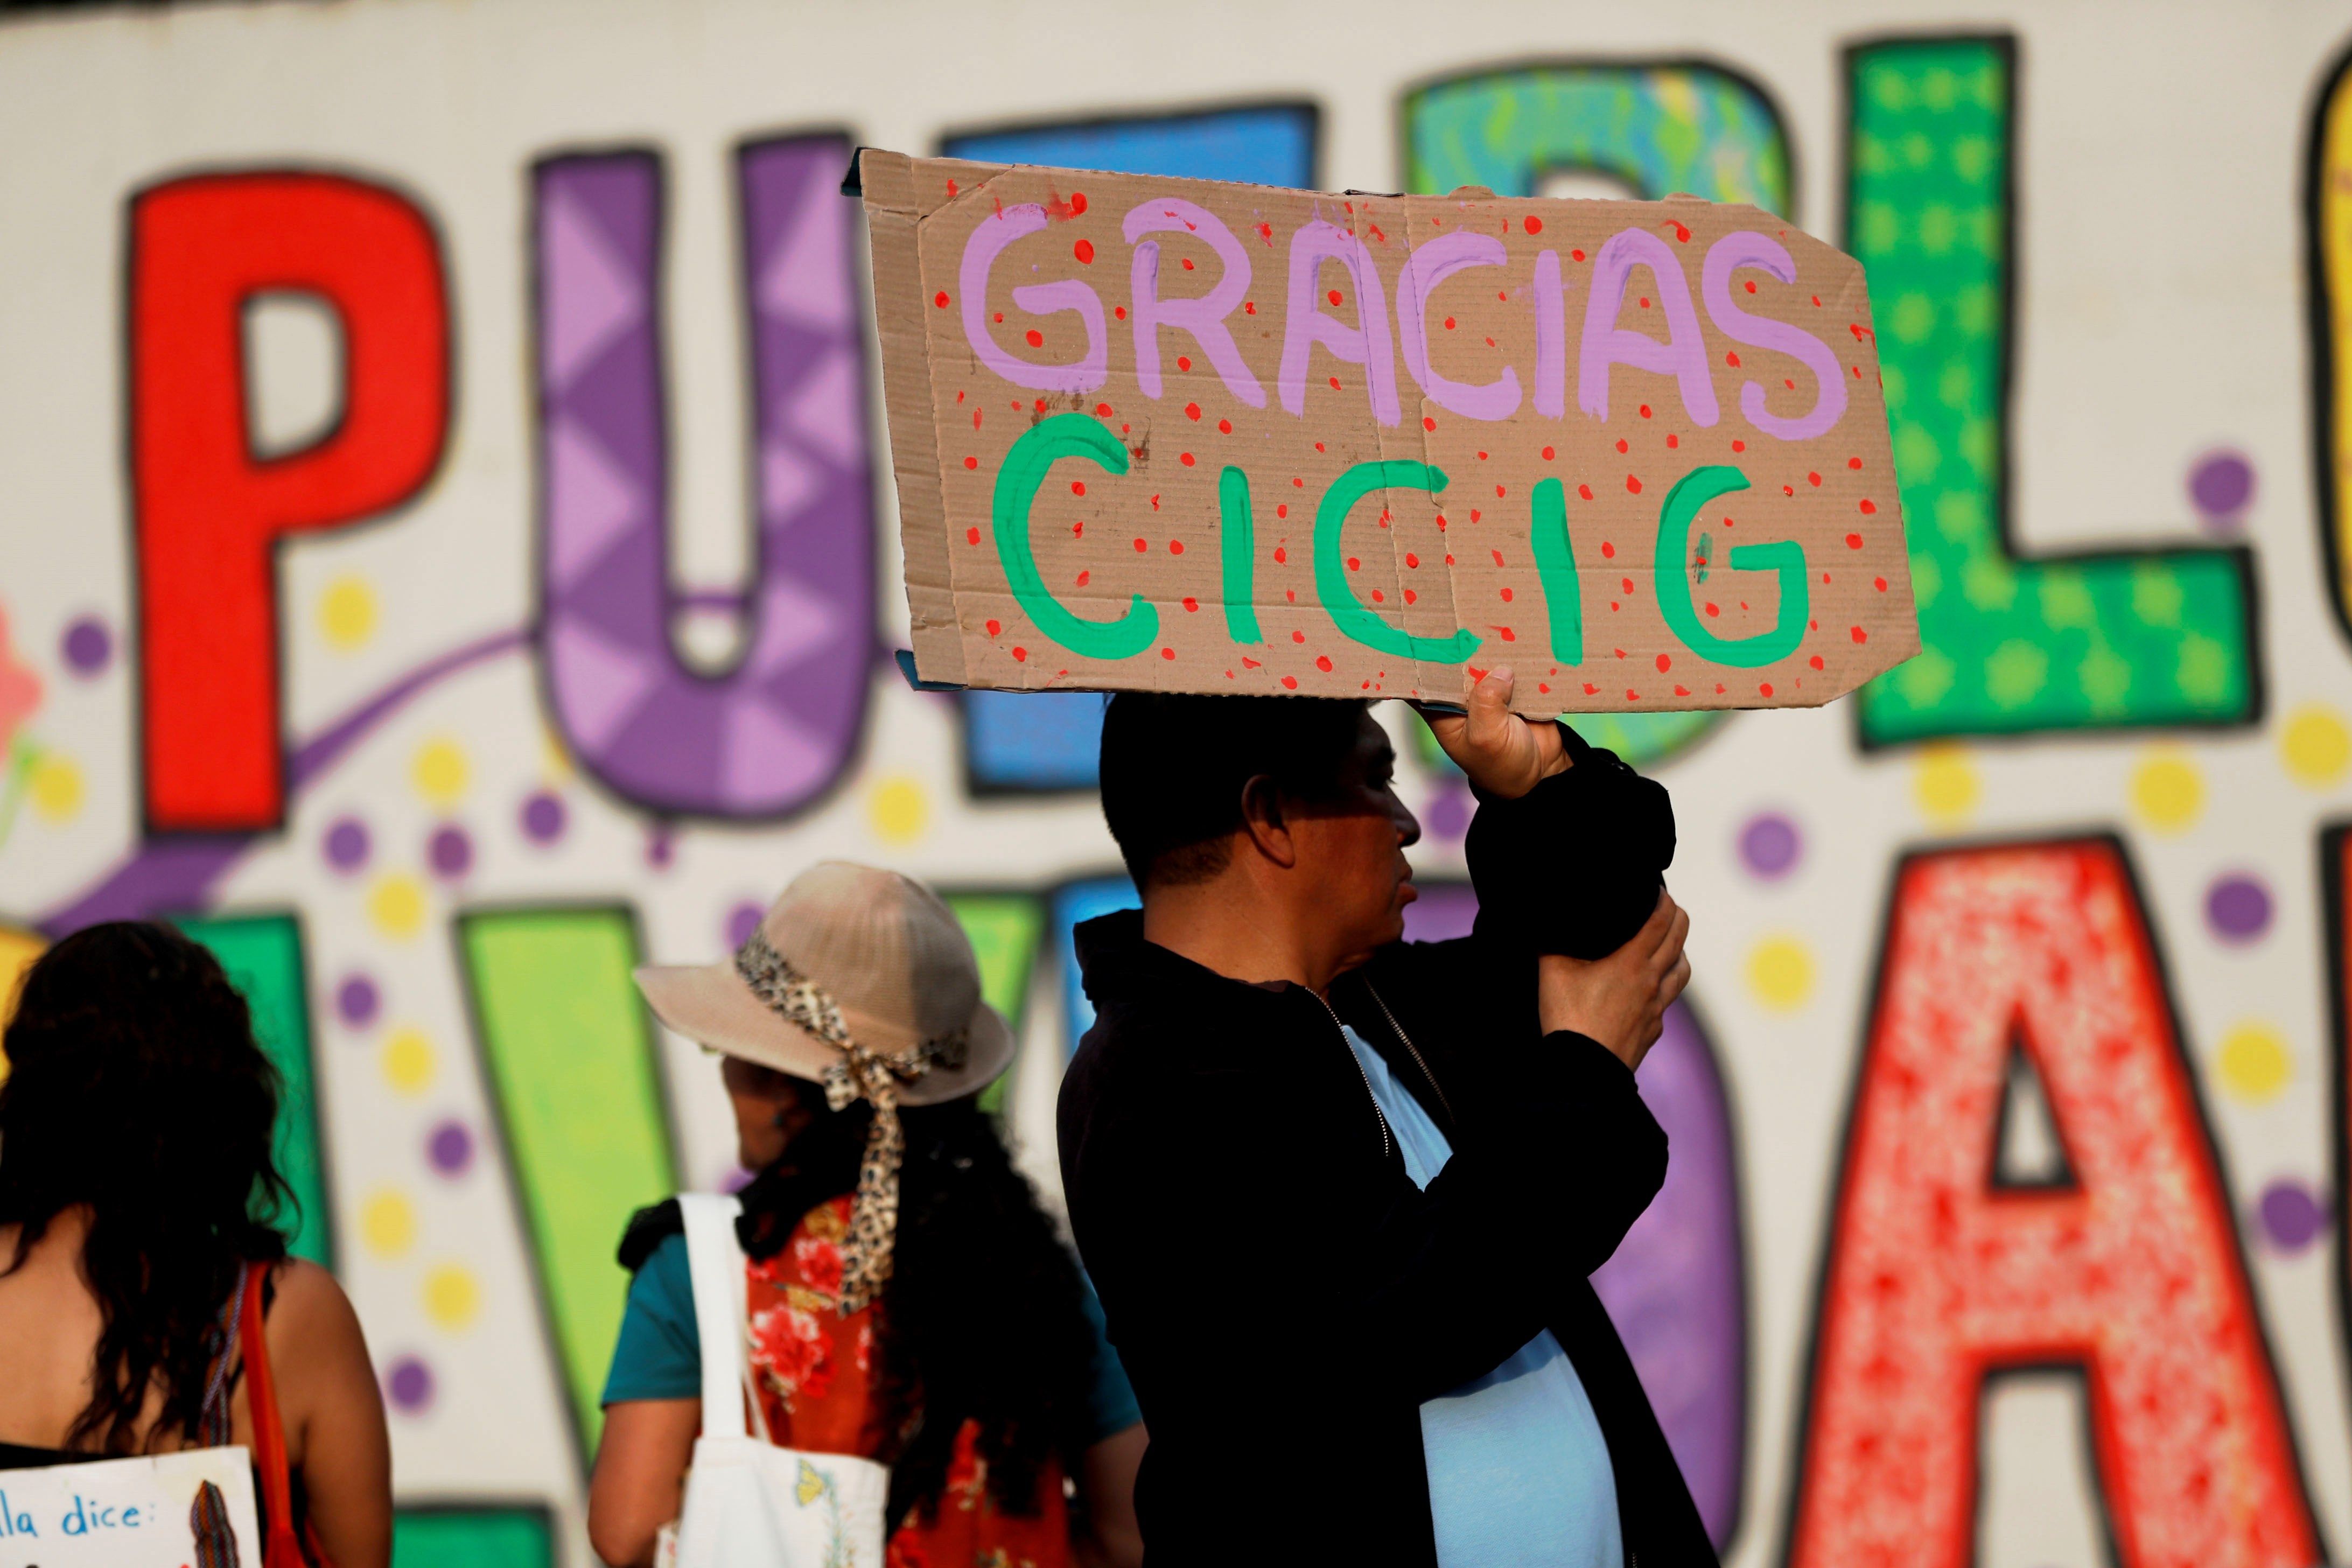 Un grupo de ciudadanos participó en una actividad donde se agradeció la labor de la Cicig. (Foto Prensa Libre: EFE)